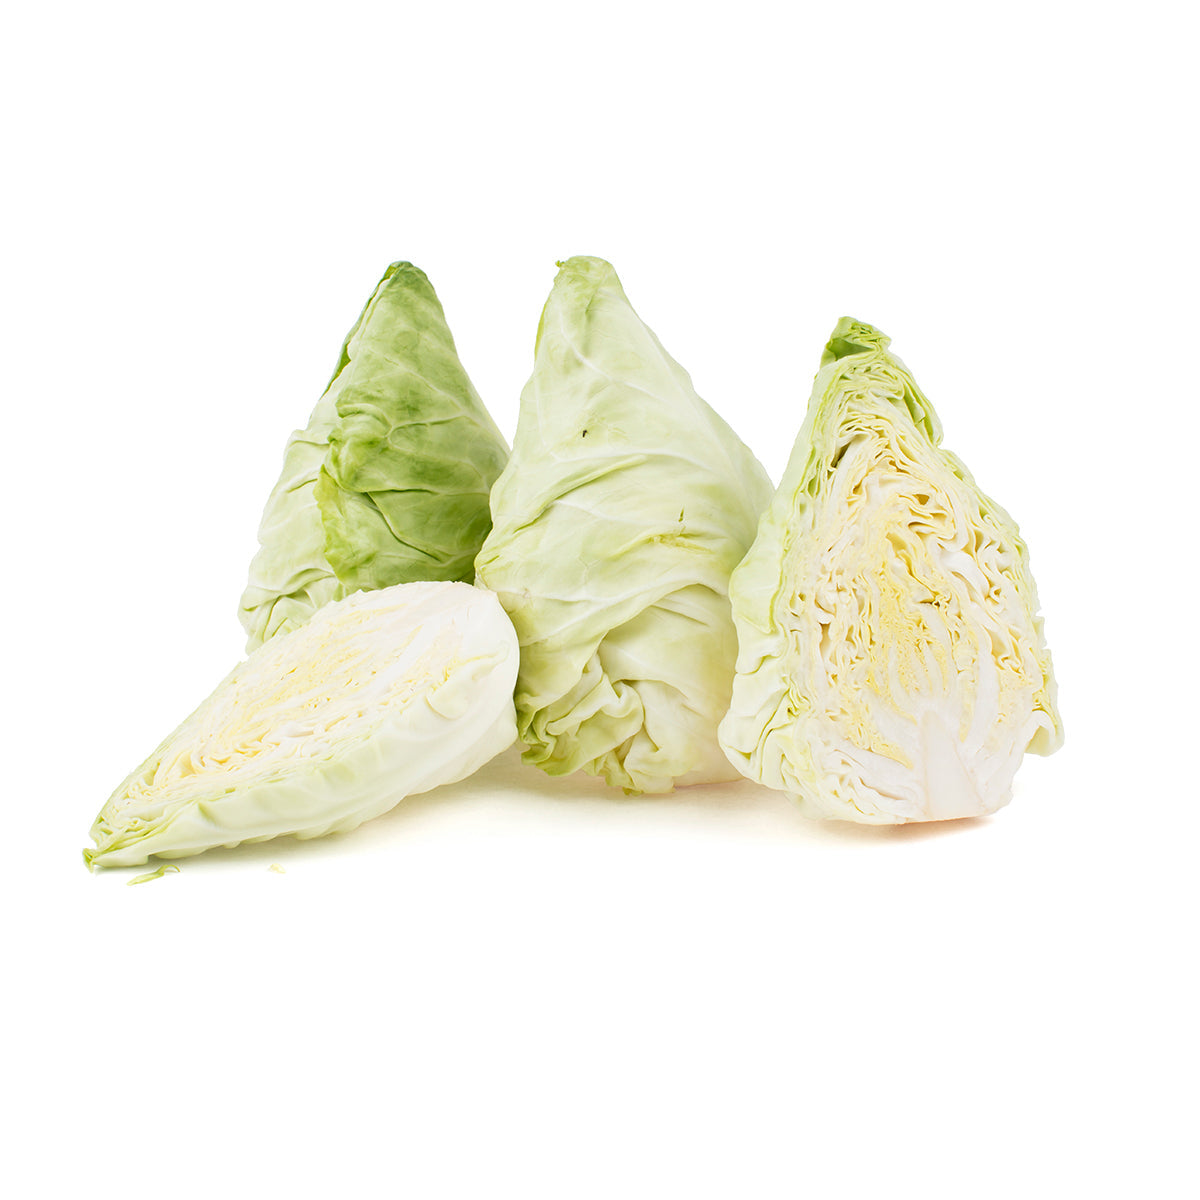 Tanimura & Antle Artisan Dew Drop Cabbage 20-24 ct